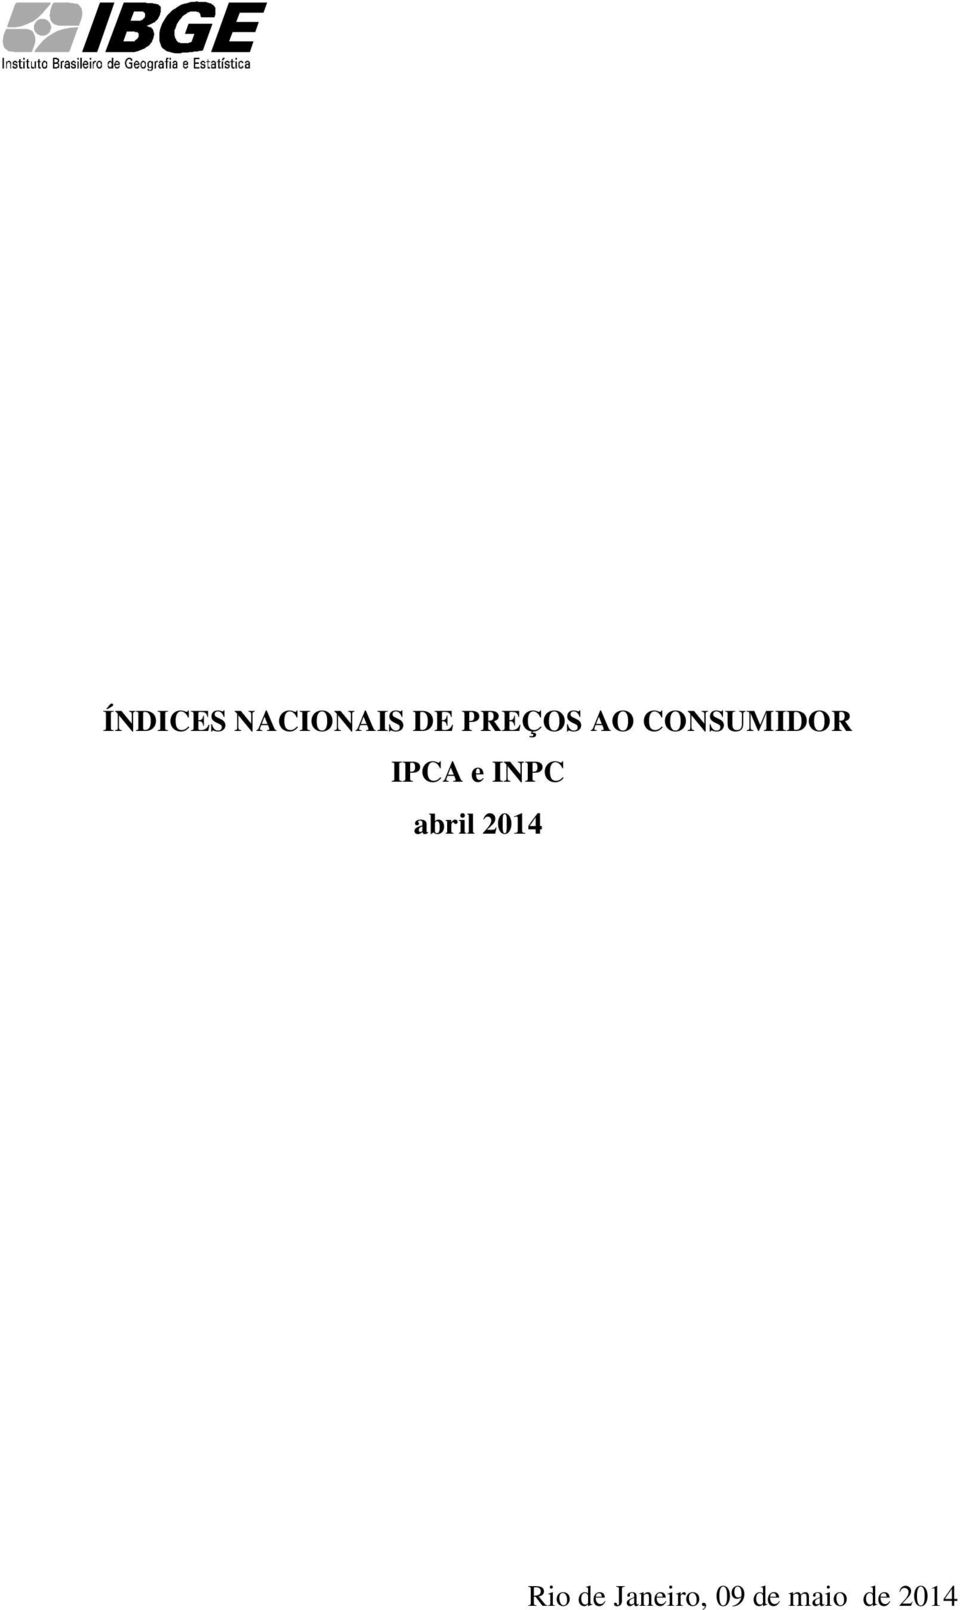 IPCA e INPC abril 2014